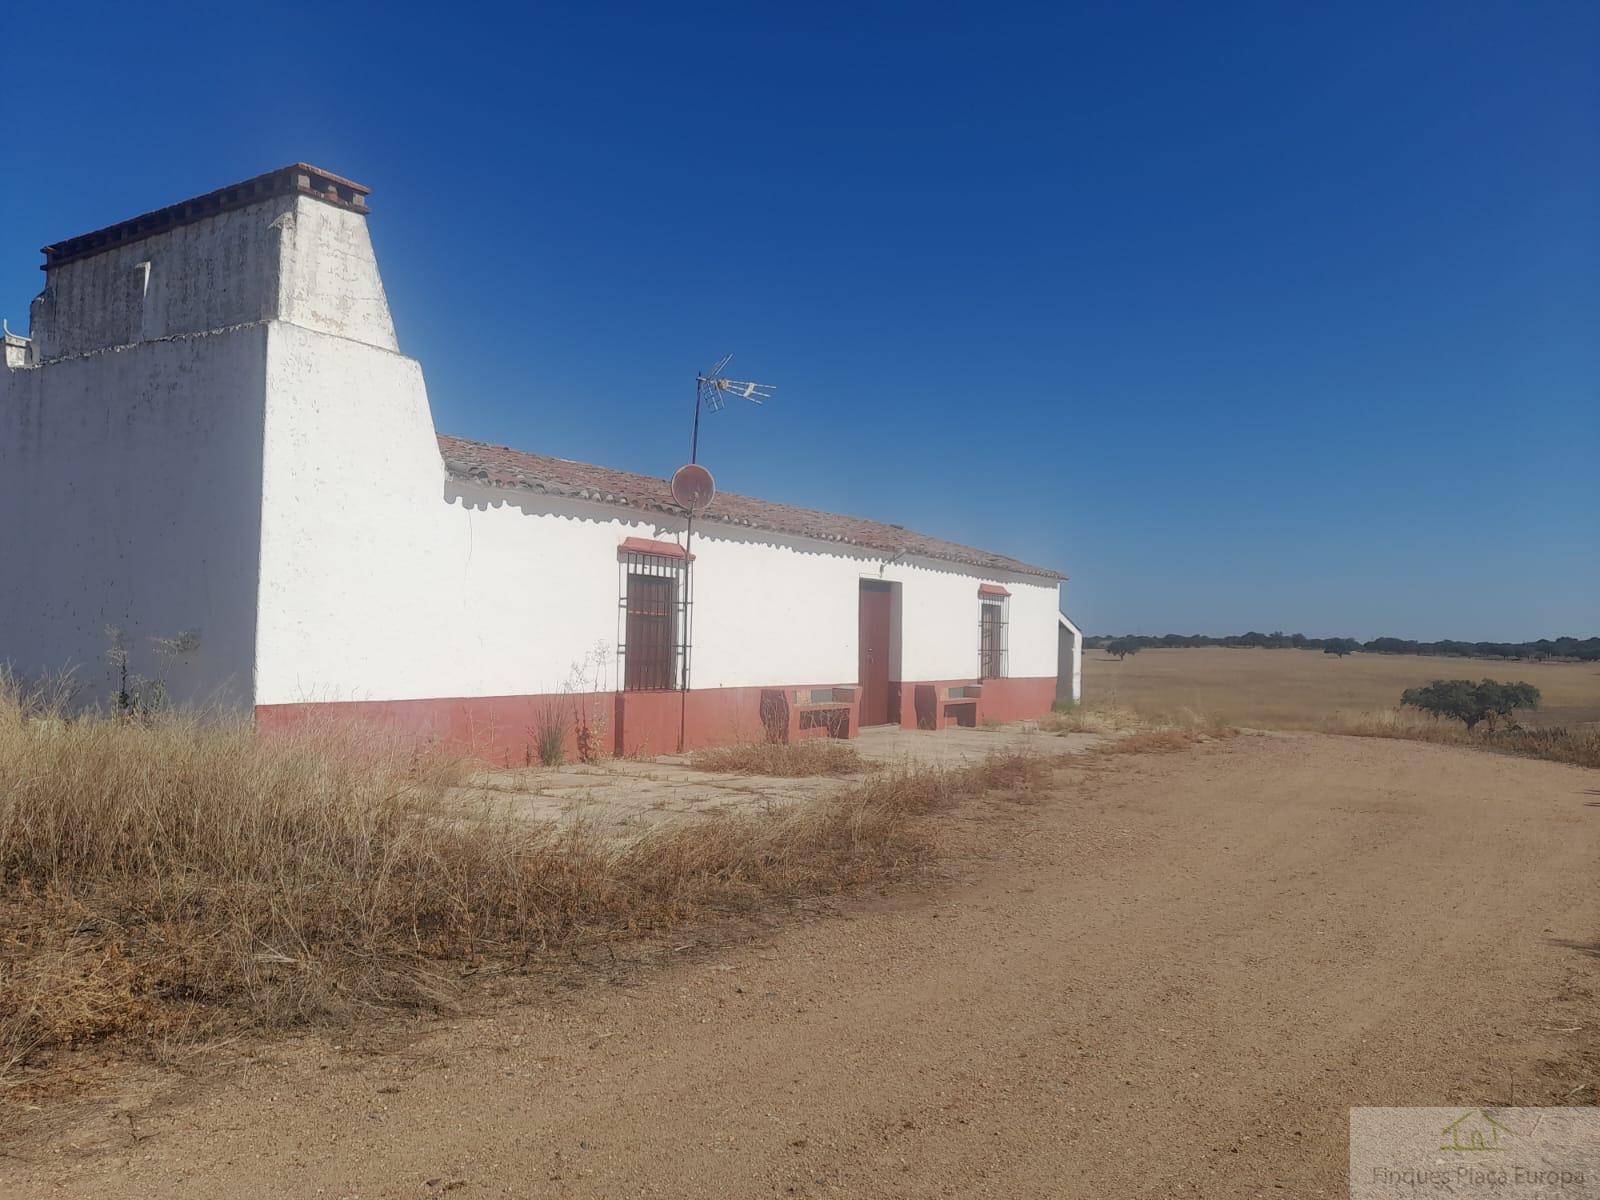 Vente de propriété rurale dans Badajoz